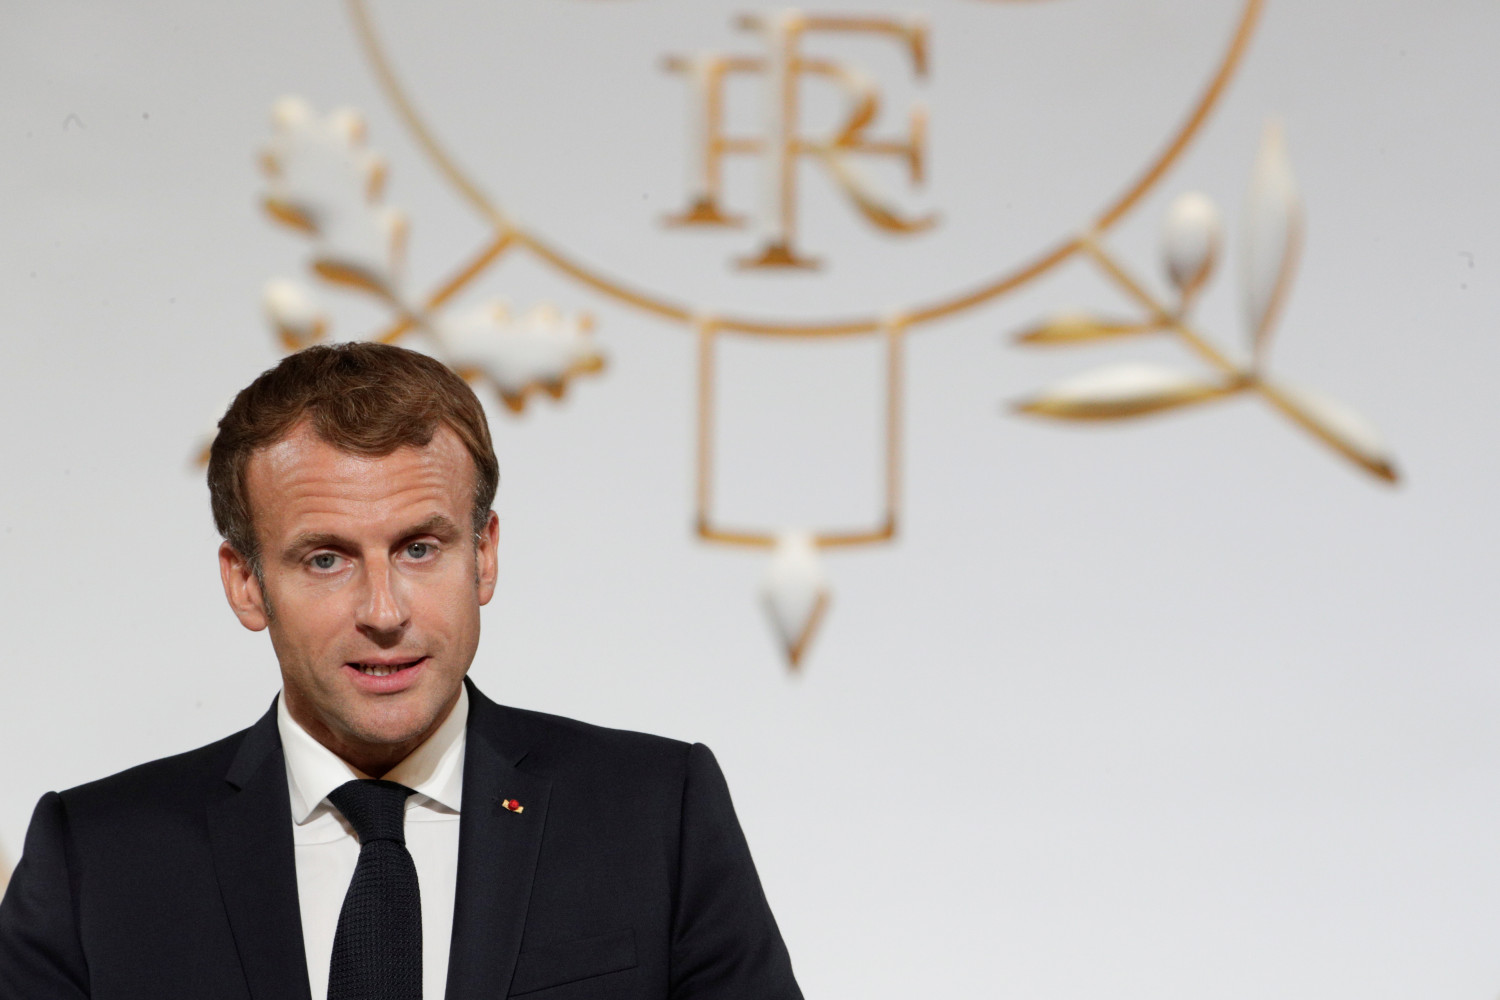 Macron anuncia una inversión de 30.000 millones para reindustrializar Francia